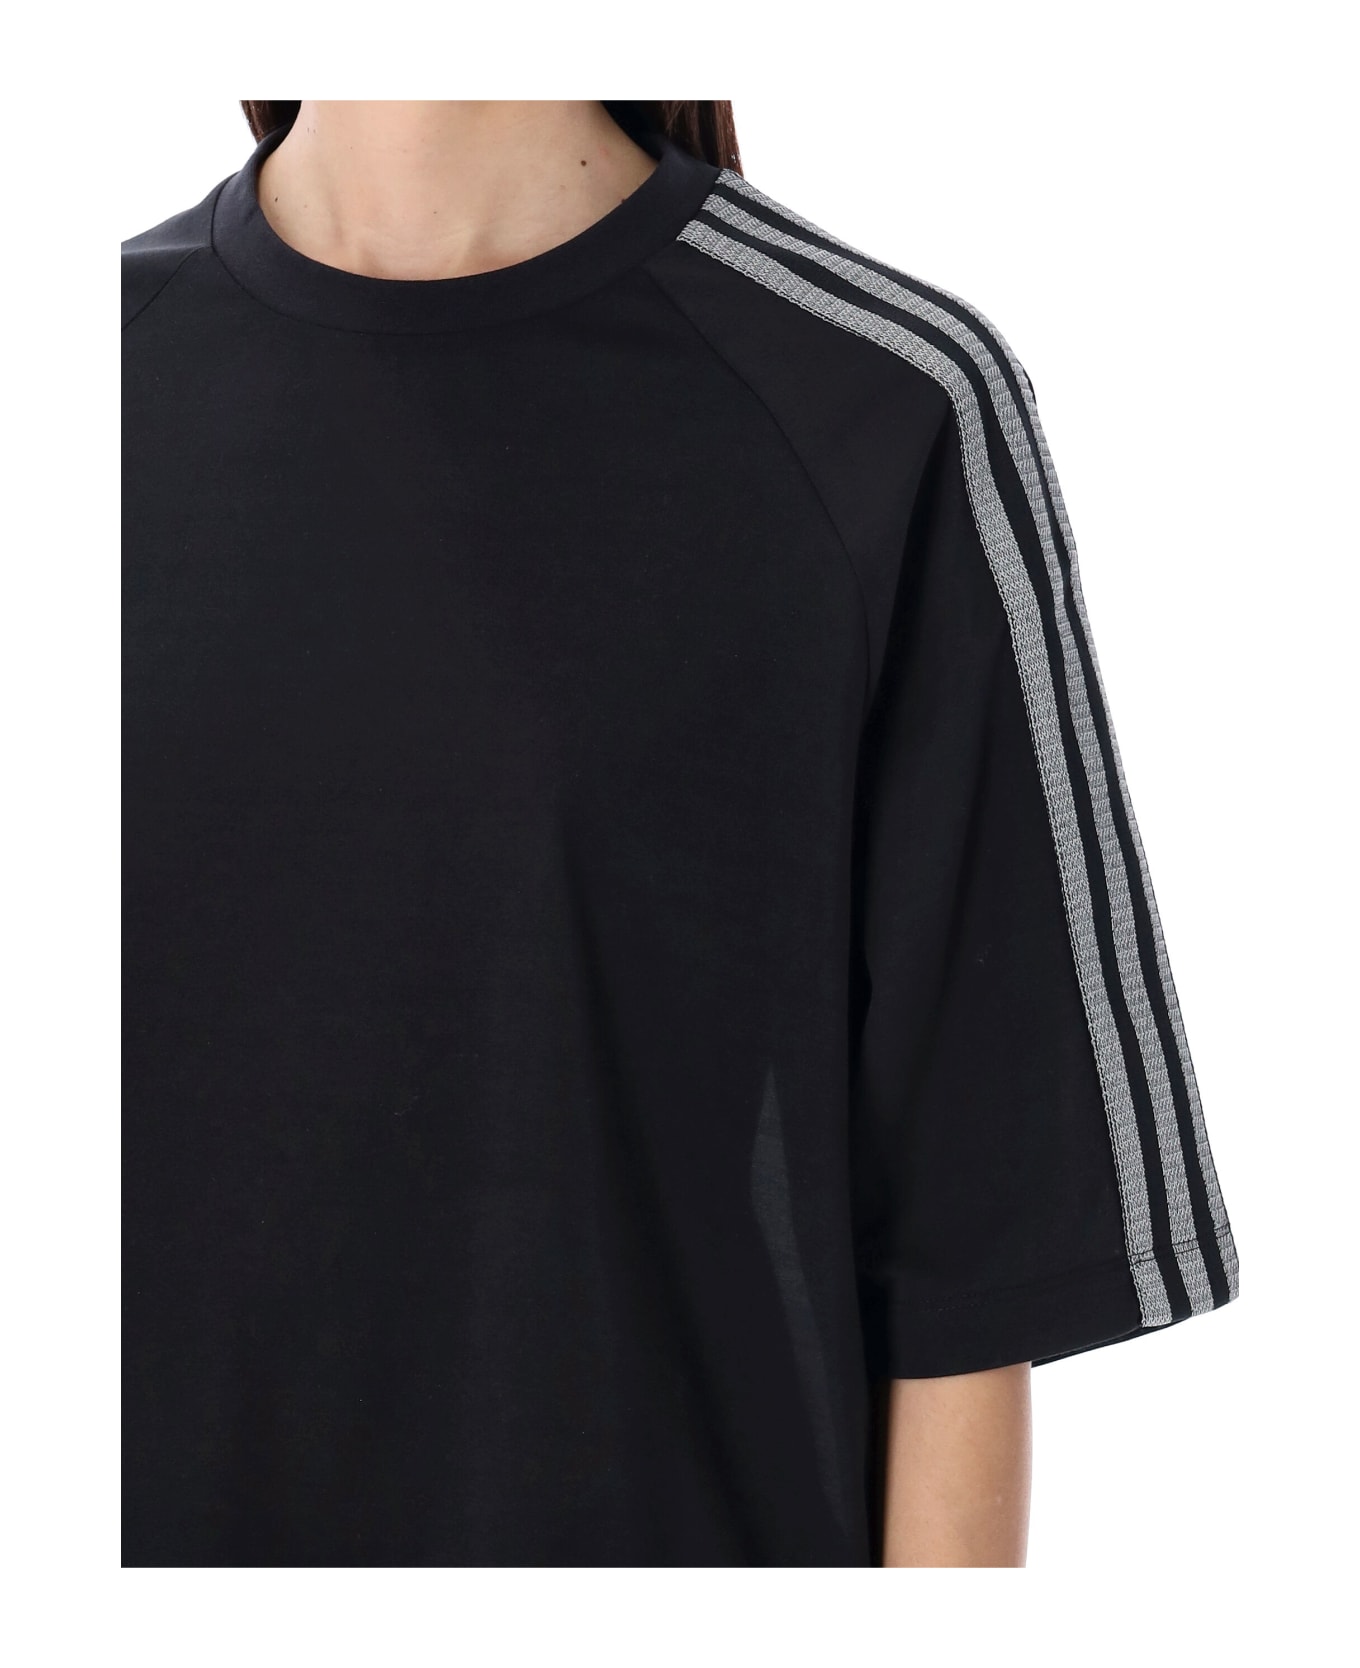 Y-3 3-stripes T-shirt - BLACK Tシャツ